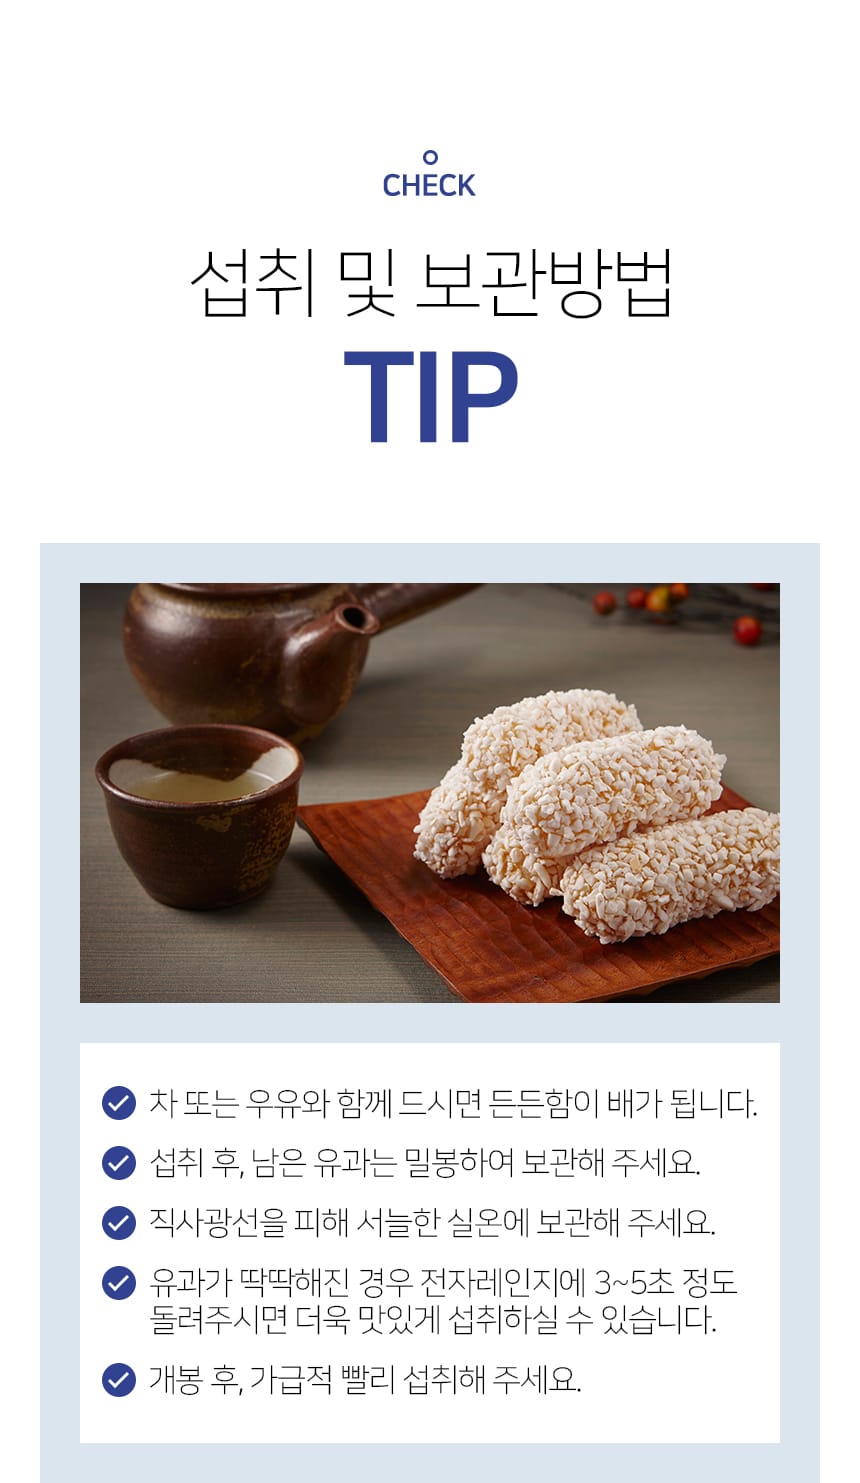 韓國食品-신궁전통한과 명인모듬유과